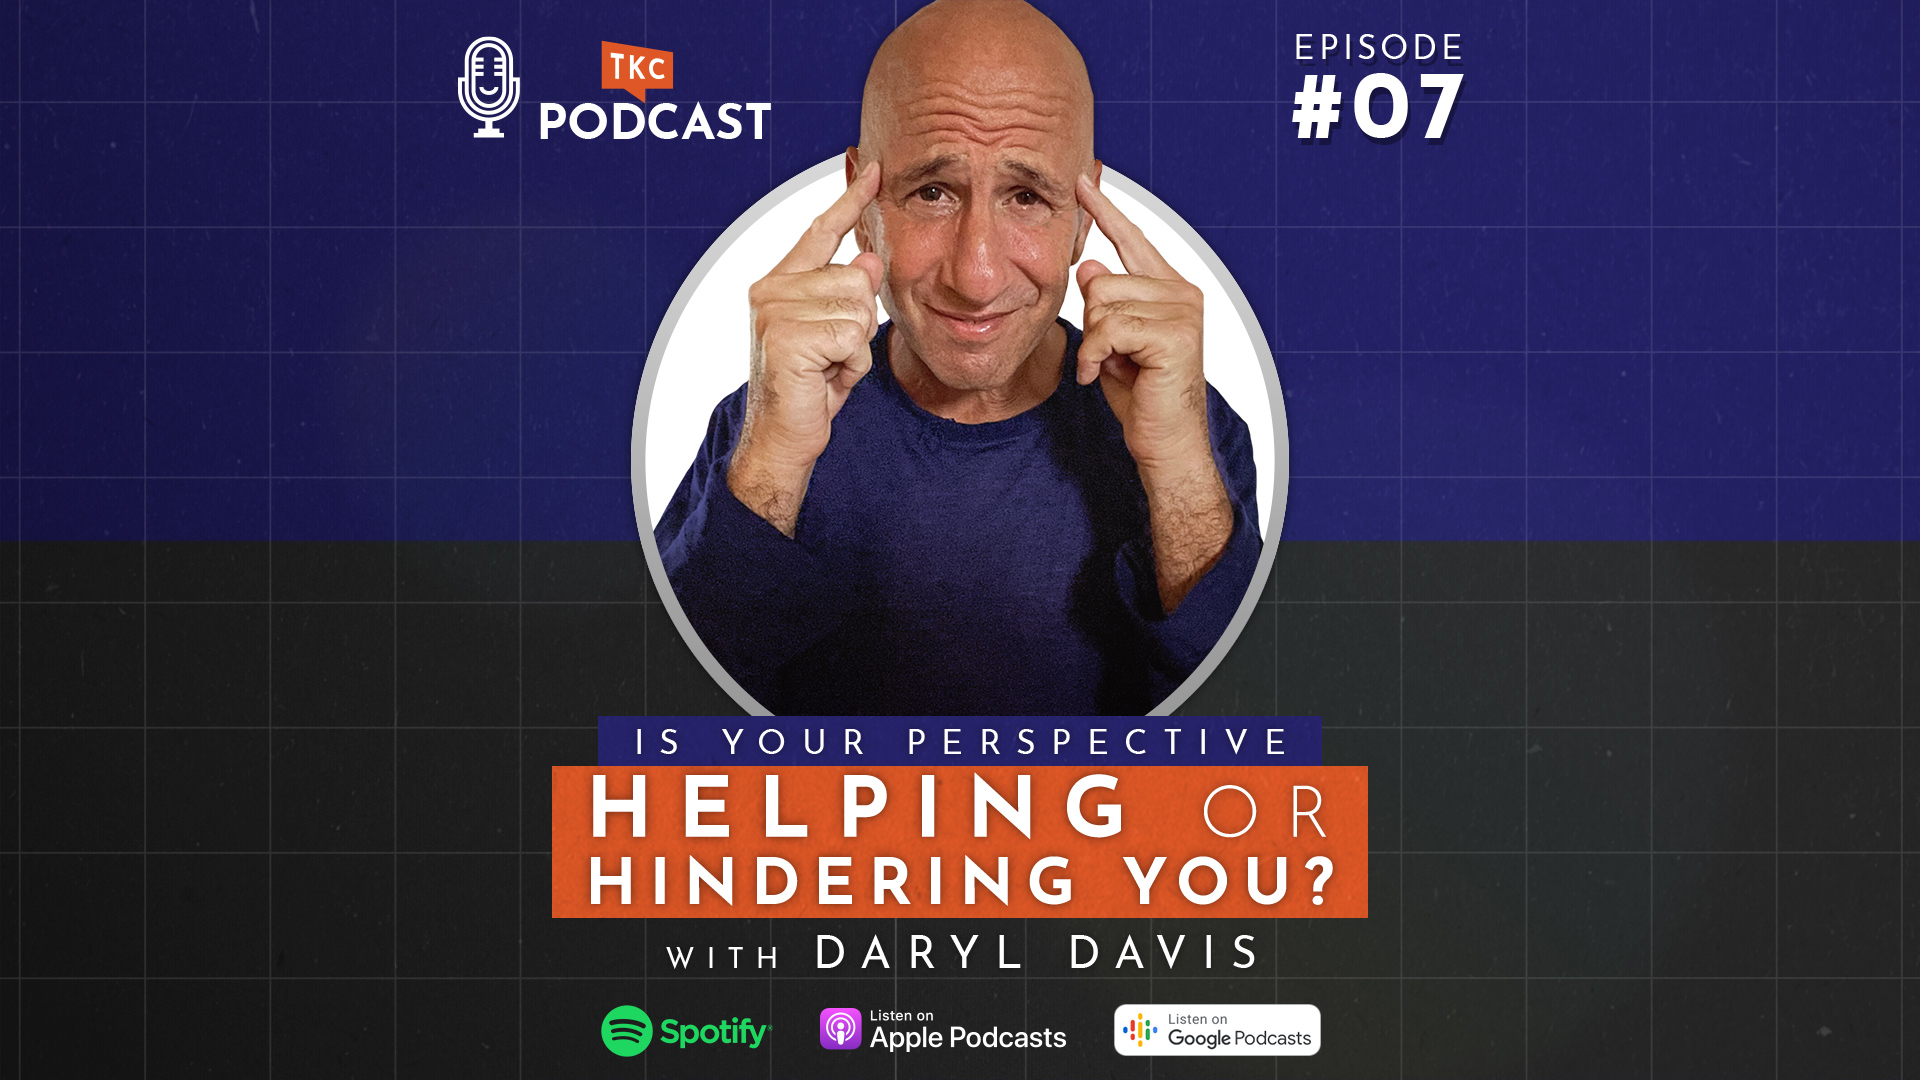 TKC Podcast - Daryl Davis